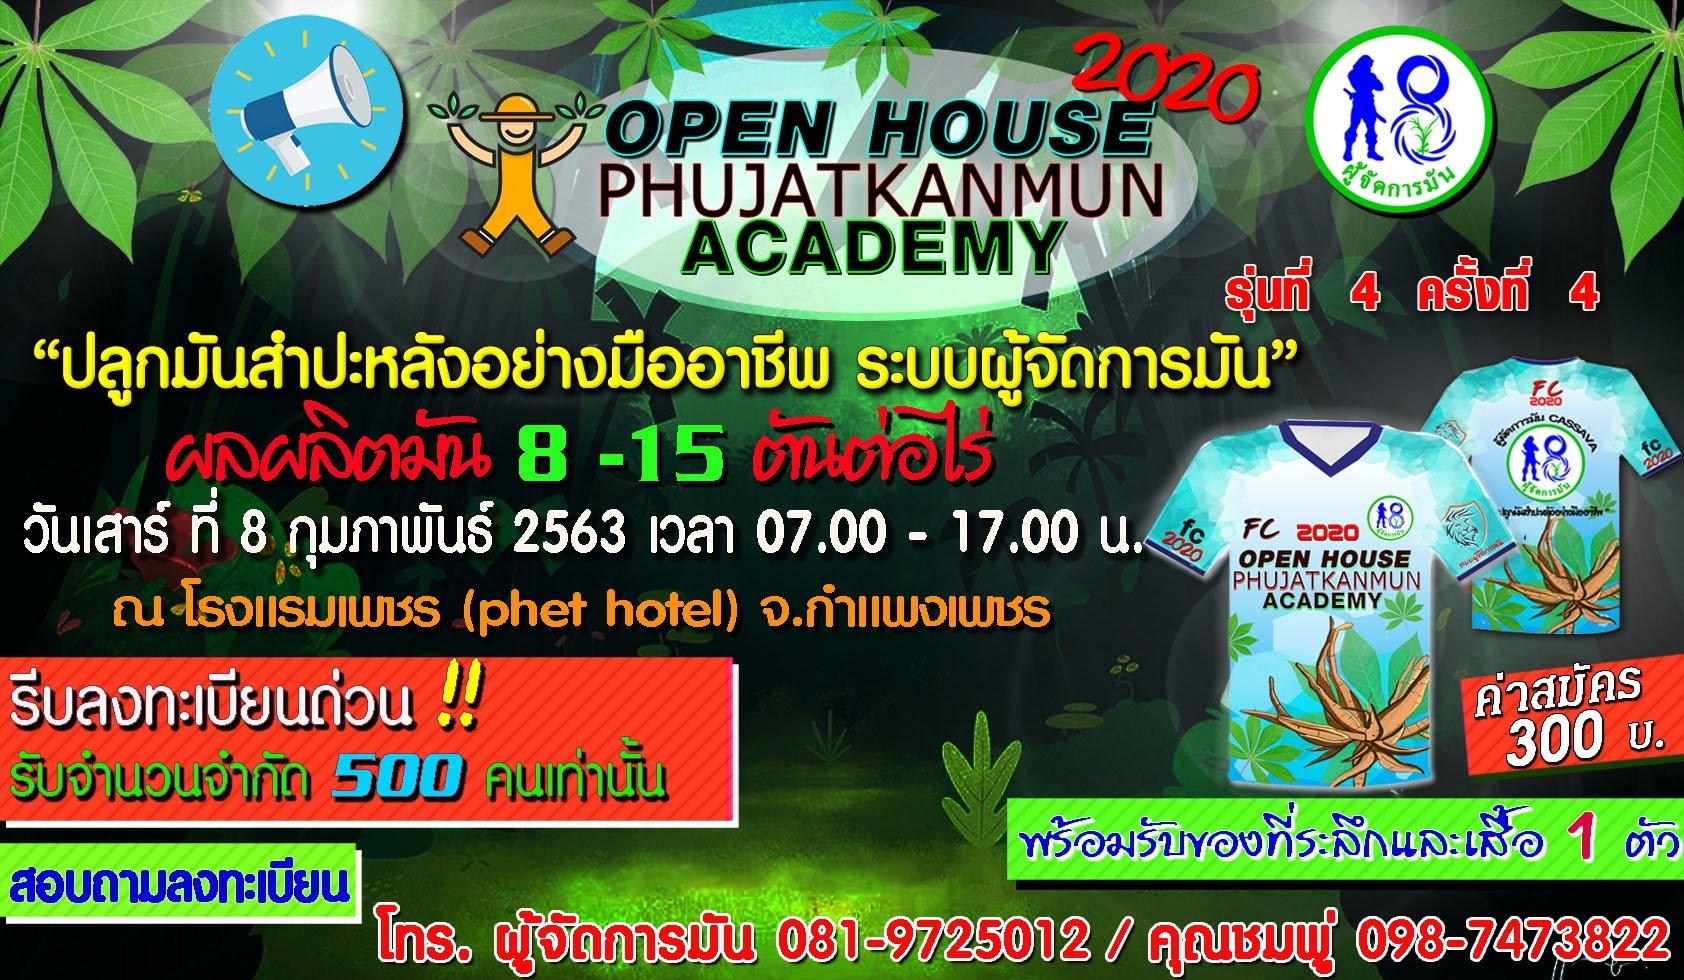 ผู้จัดการมันเปิดบ้านต้อนรับพี่น้องFCผู้จัดการมันรุ่นที่ 4 Phujatkanmun Open House 8 ก.พ. 2563